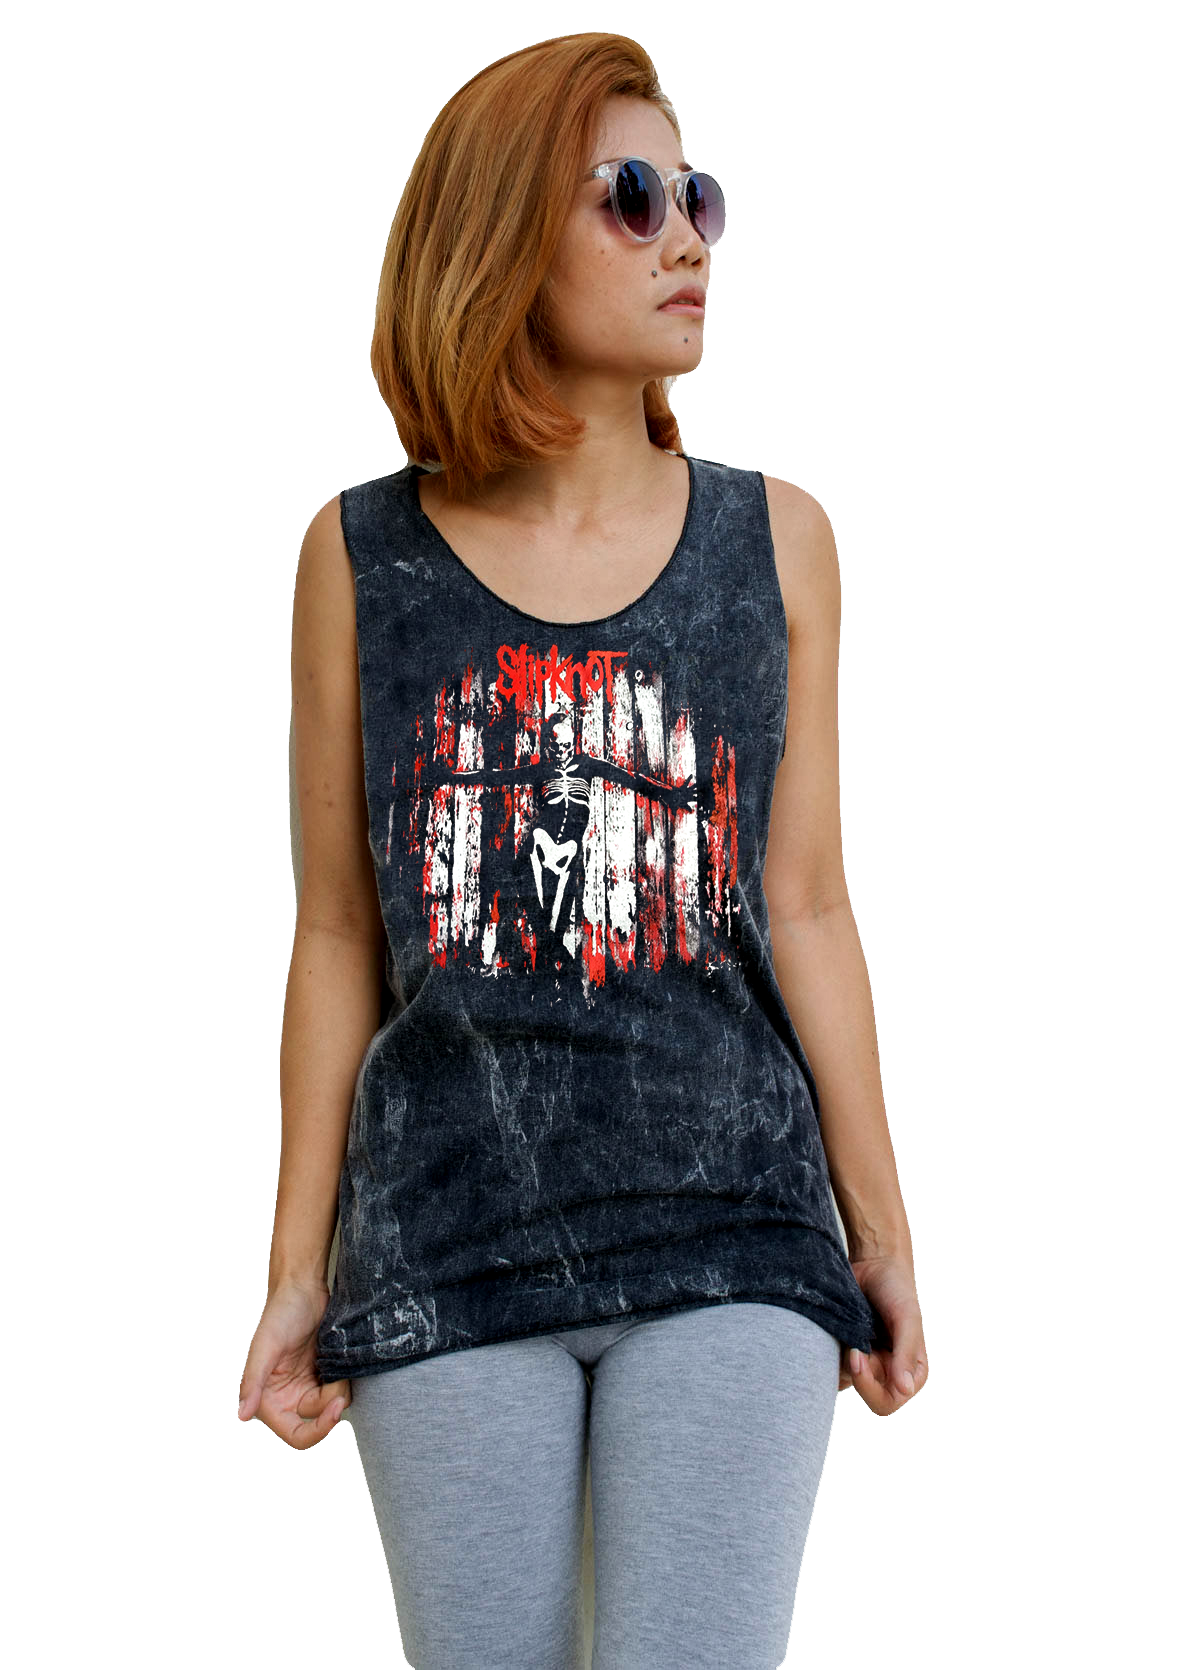 Unisex Slipknot Tank-Top Singlet vest Sleeveless T-shirt